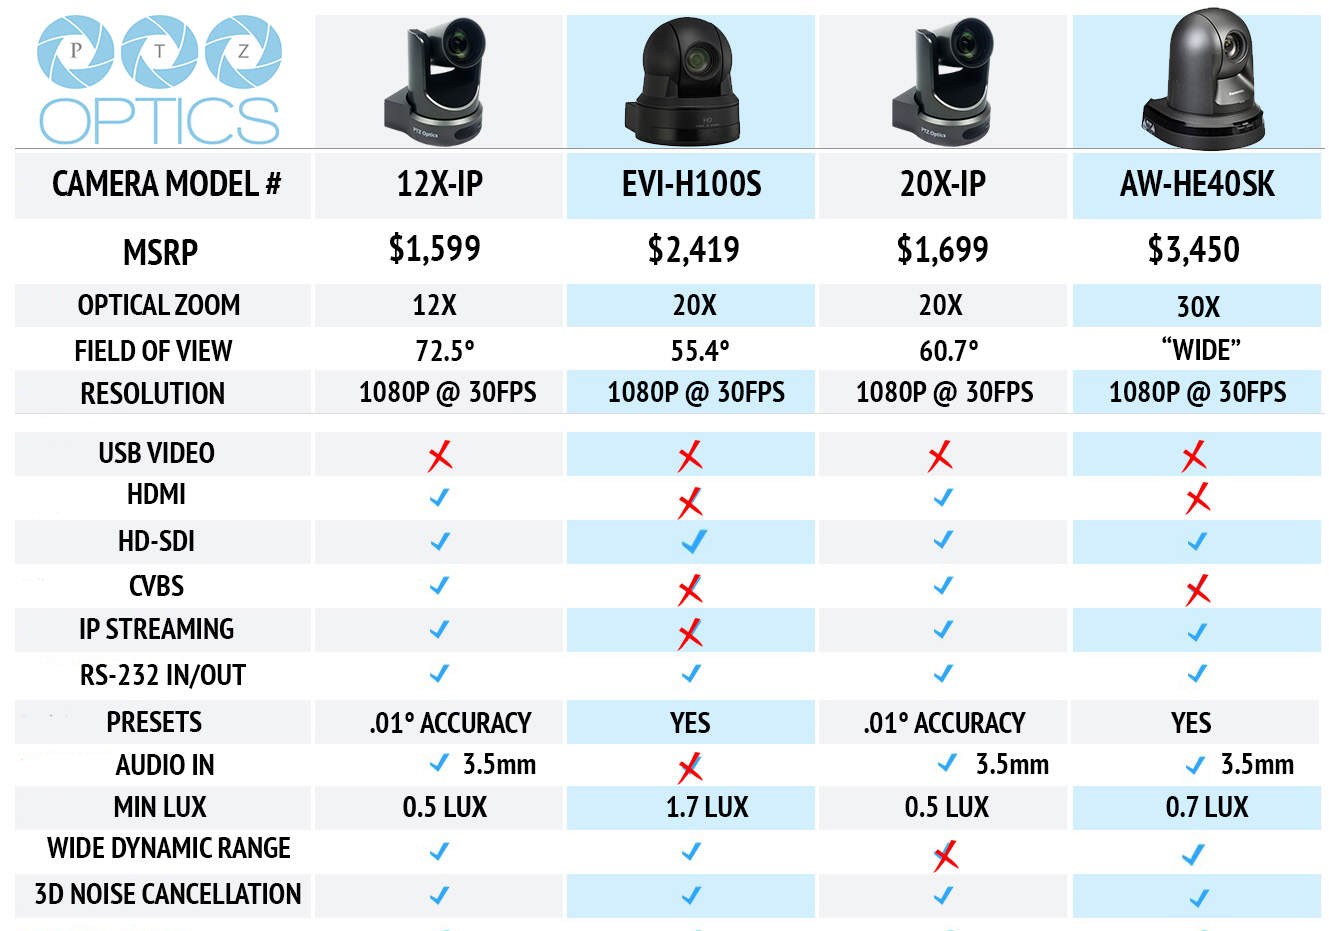 Sony Camera Comparison Chart